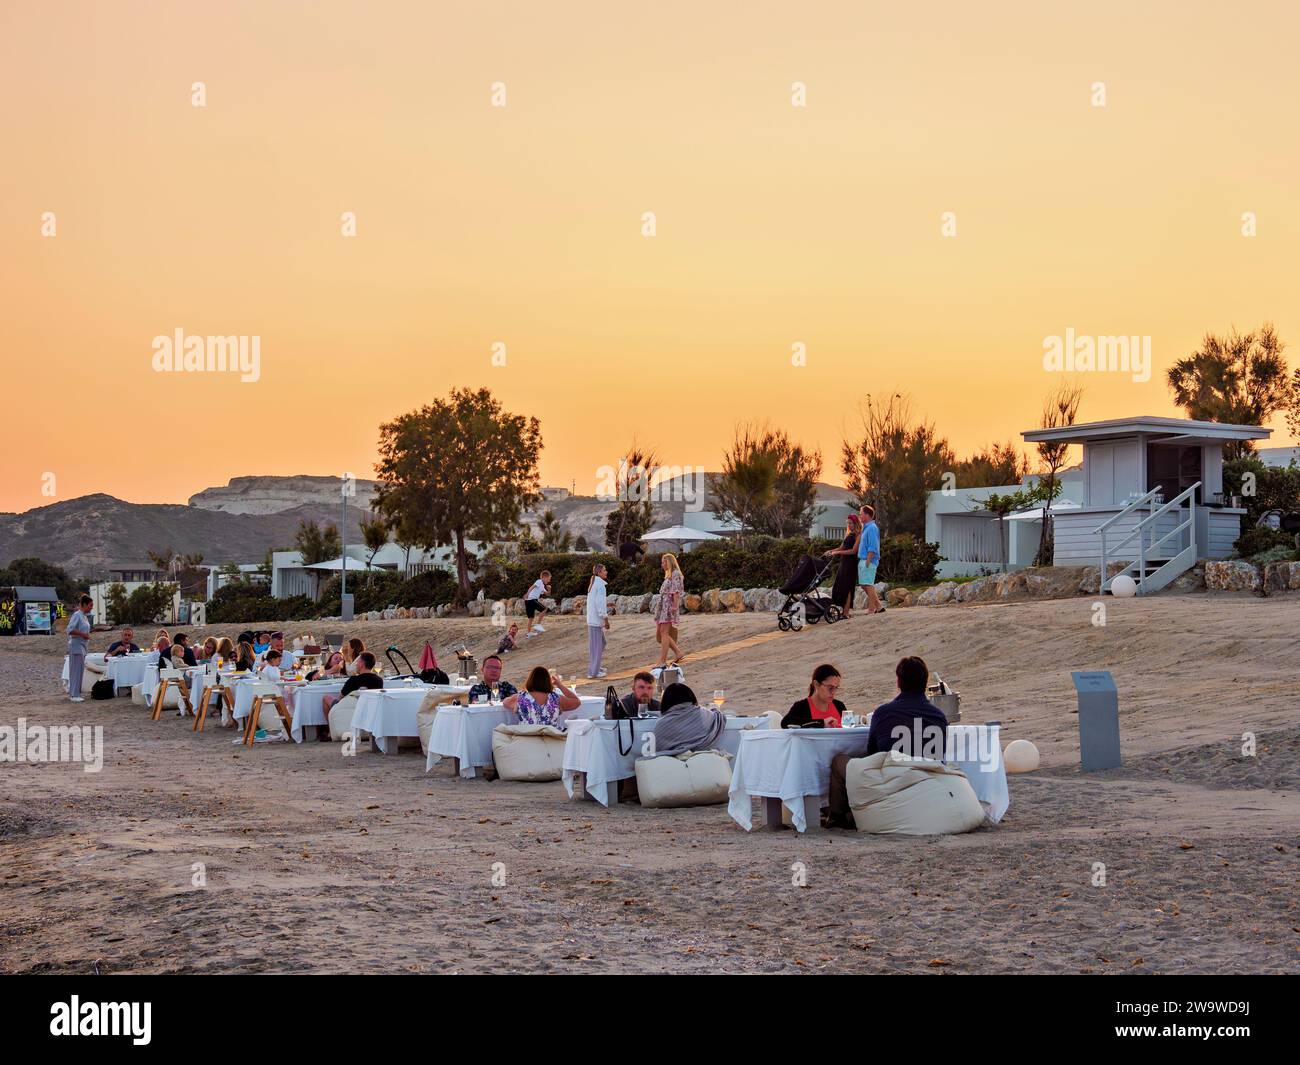 People eating al fresco at Agios Stefanos Beach, dusk, Kos Island, Dodecanese, Greece Stock Photo